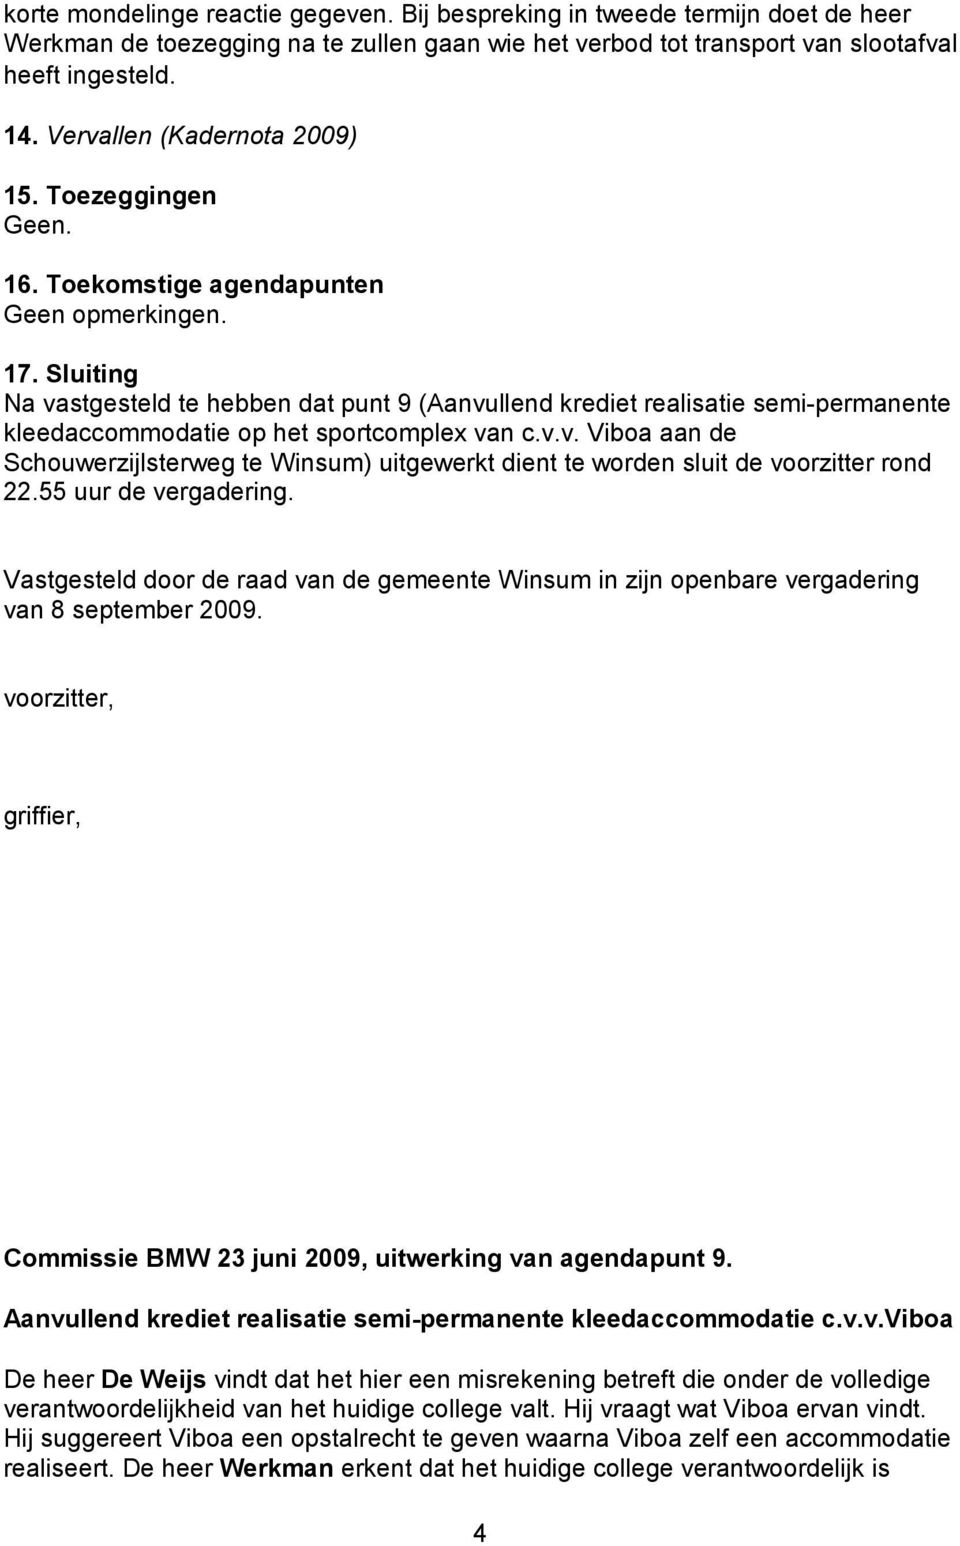 Sluiting Na vastgesteld te hebben dat punt 9 (Aanvullend krediet realisatie semi-permanente kleedaccommodatie op het sportcomplex van c.v.v. Viboa aan de Schouwerzijlsterweg te Winsum) uitgewerkt dient te worden sluit de voorzitter rond 22.